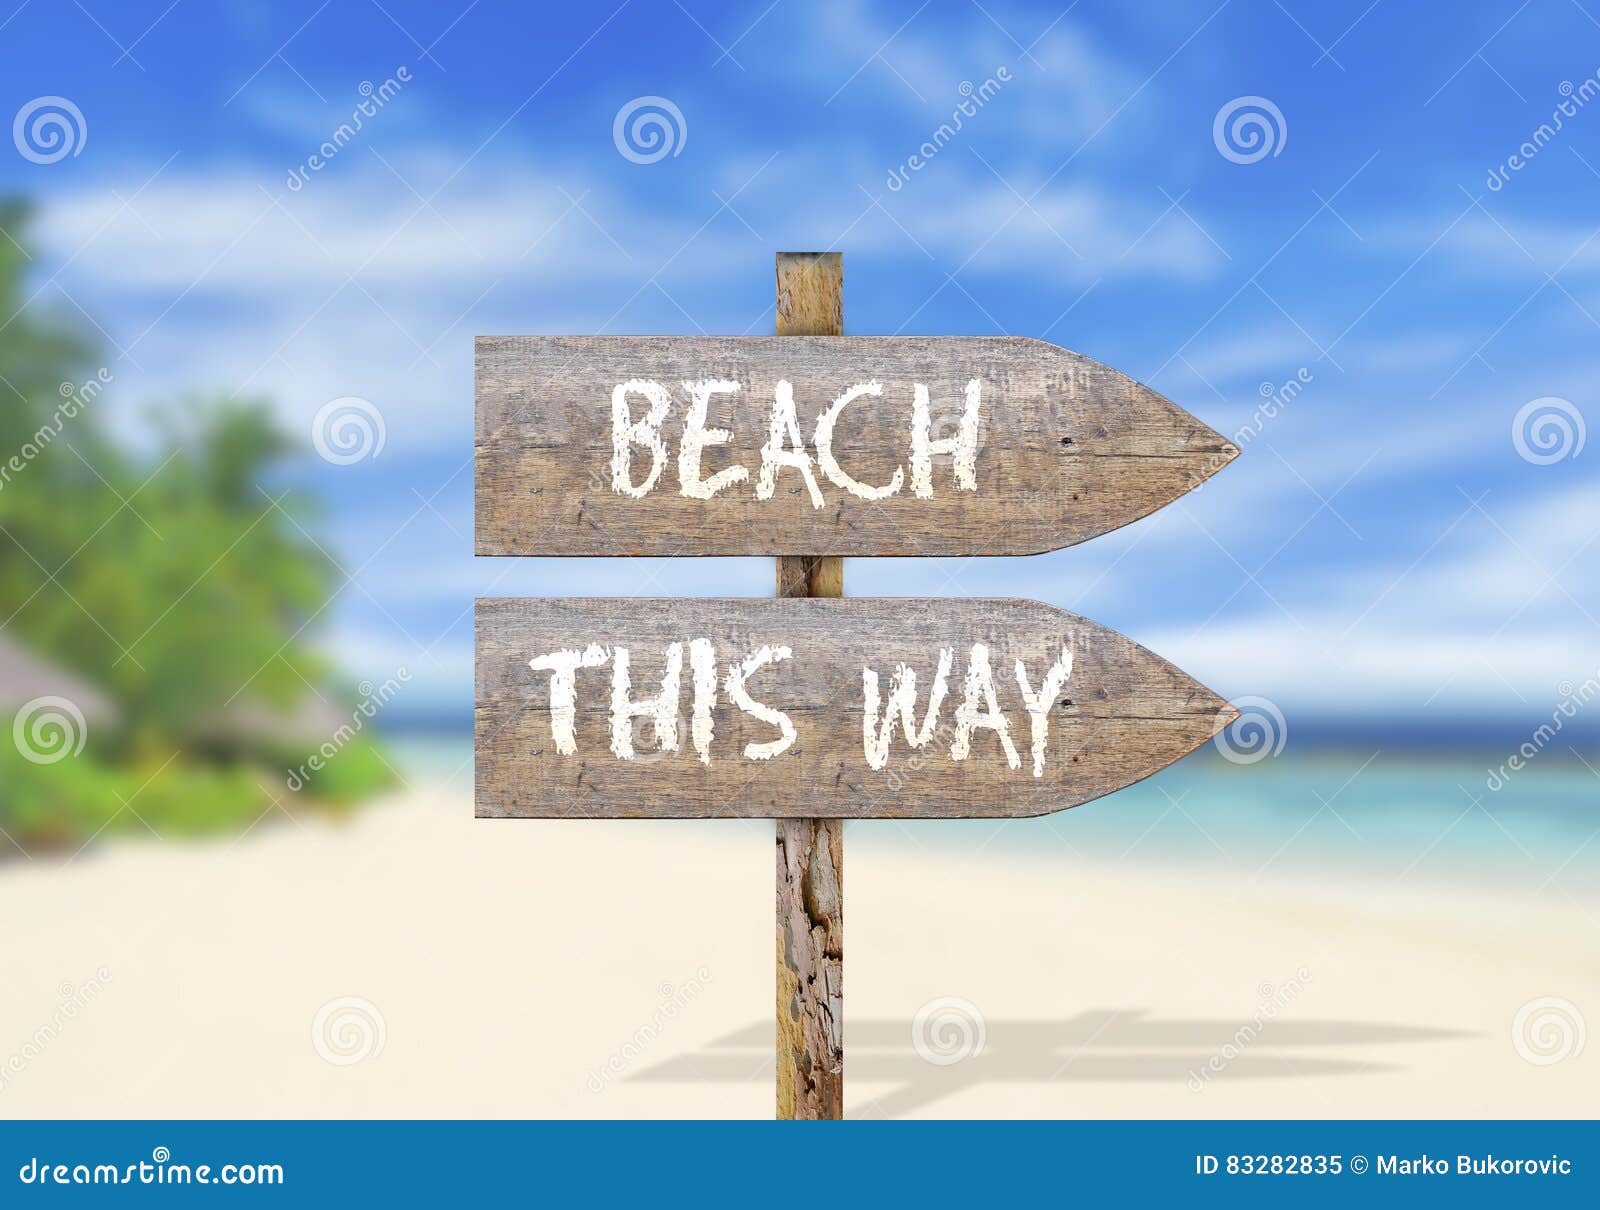 Beach This Way!